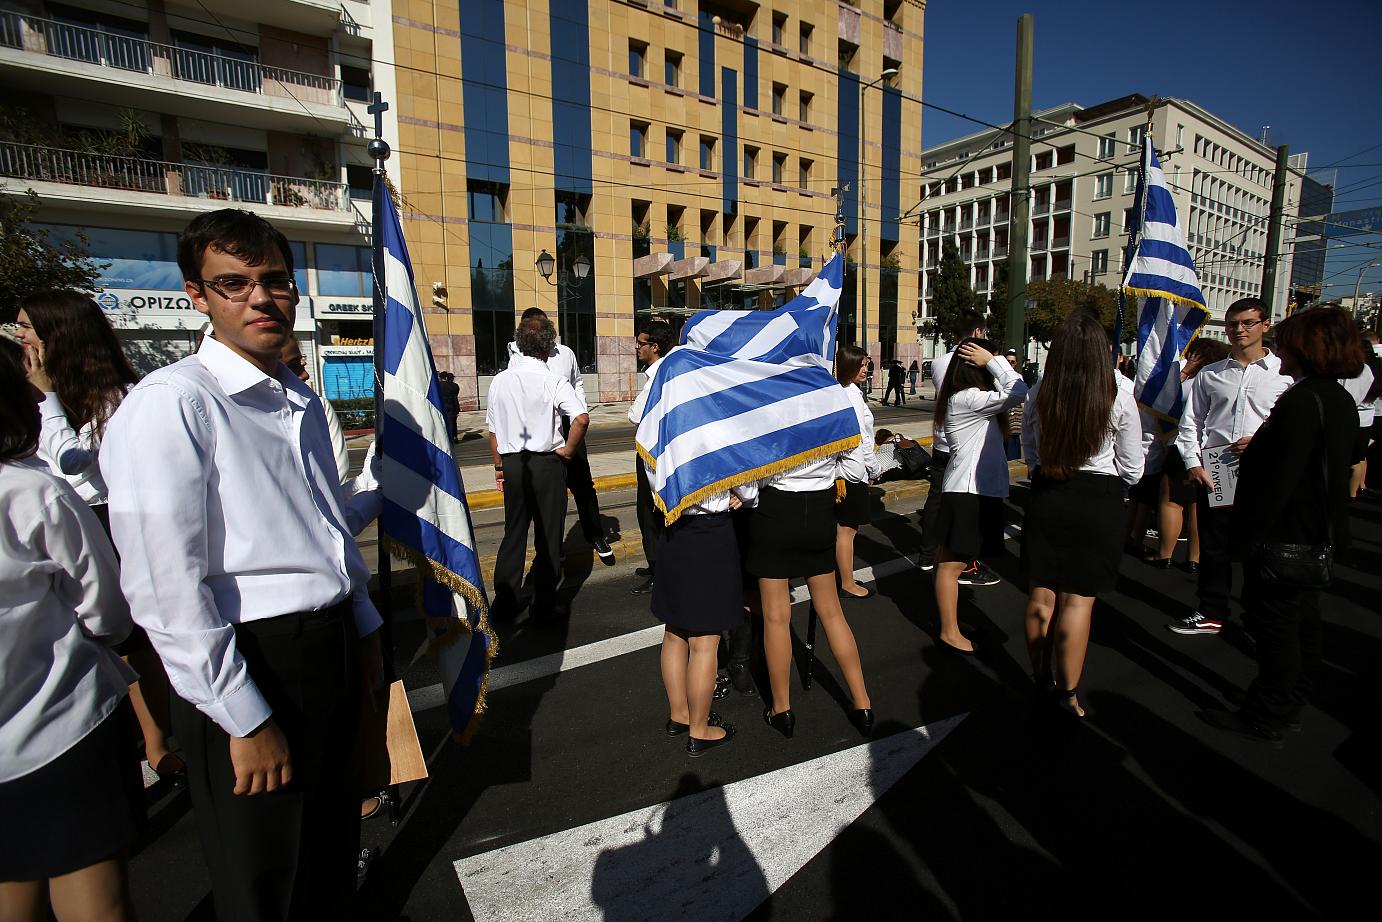 Η Ελλάδα το 2013 μέσα από ένα συναρπαστικό φωτογραφικό άλμπουμ [εικόνες] | iefimerida.gr 31